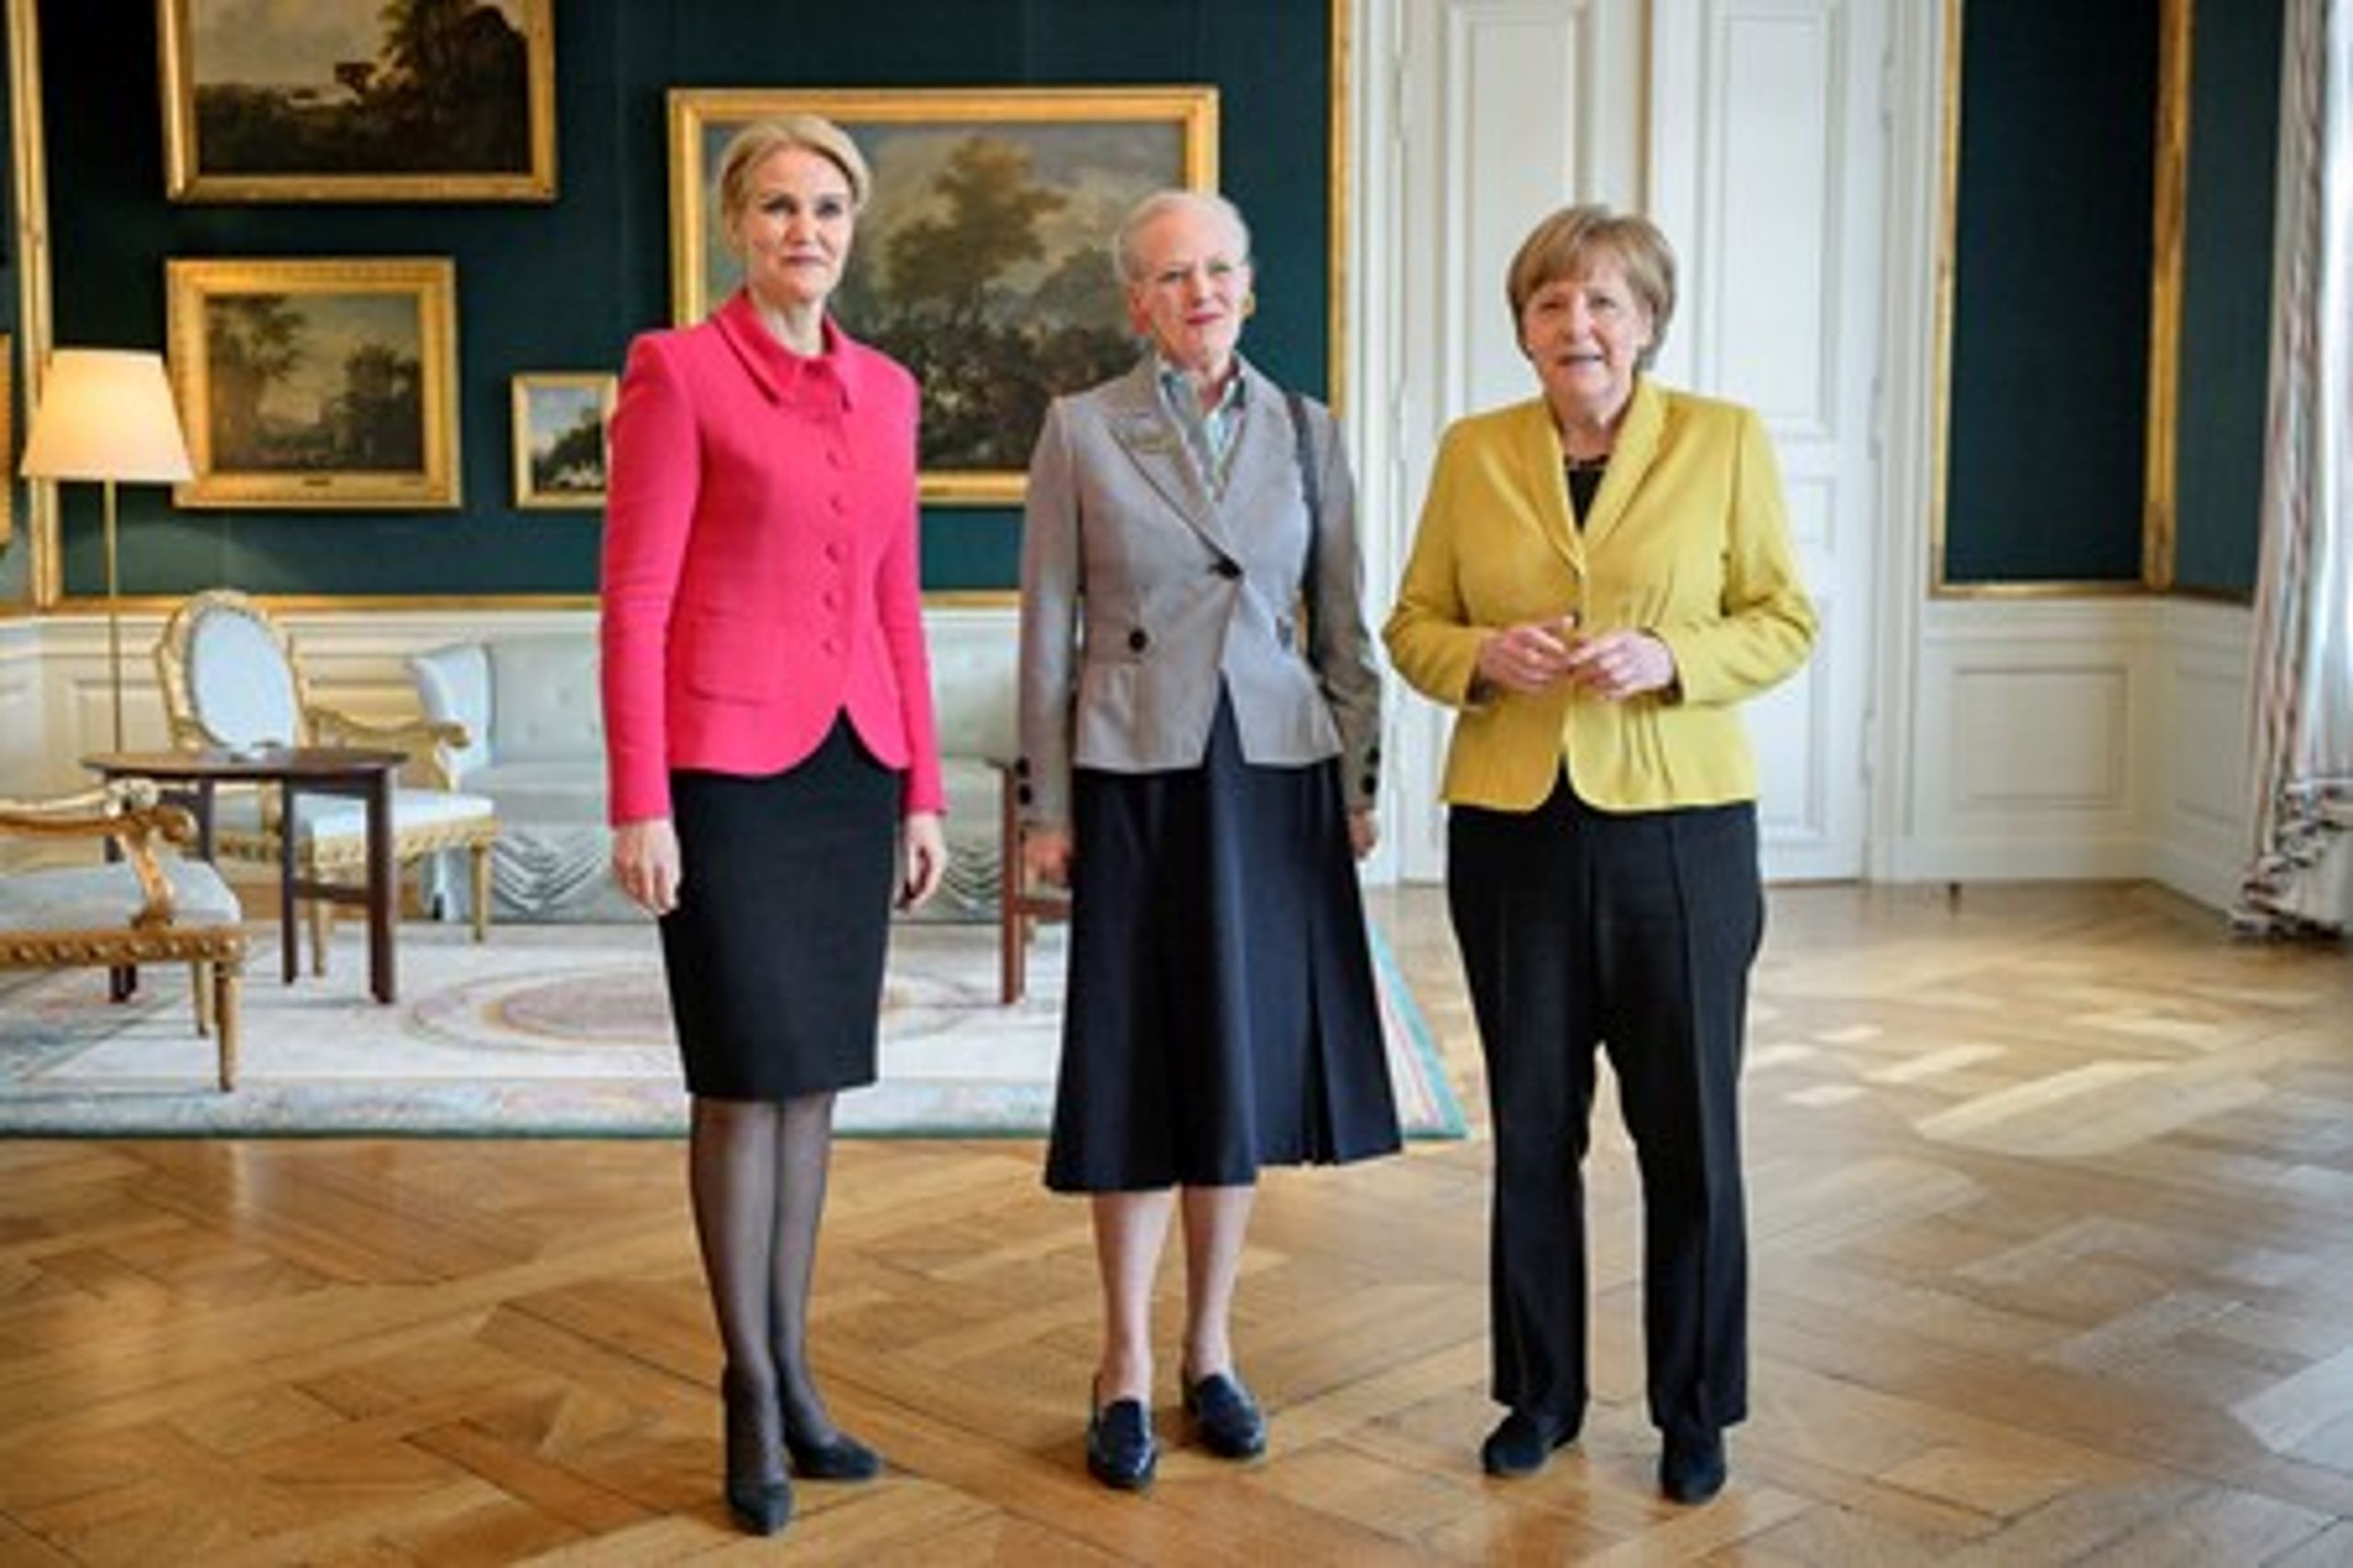 Statsminister Helle Thorning-Schmidts (S) lykkelige tid som ophøjet og feteret statskvinde, der formåede at samle nationen ved majestætens fødselsdag og&nbsp;70-året for Befrielsen, samt fik statsbesøg fra&nbsp;Angela Merkel, er slut, skriver Jarl Cordua.&nbsp;